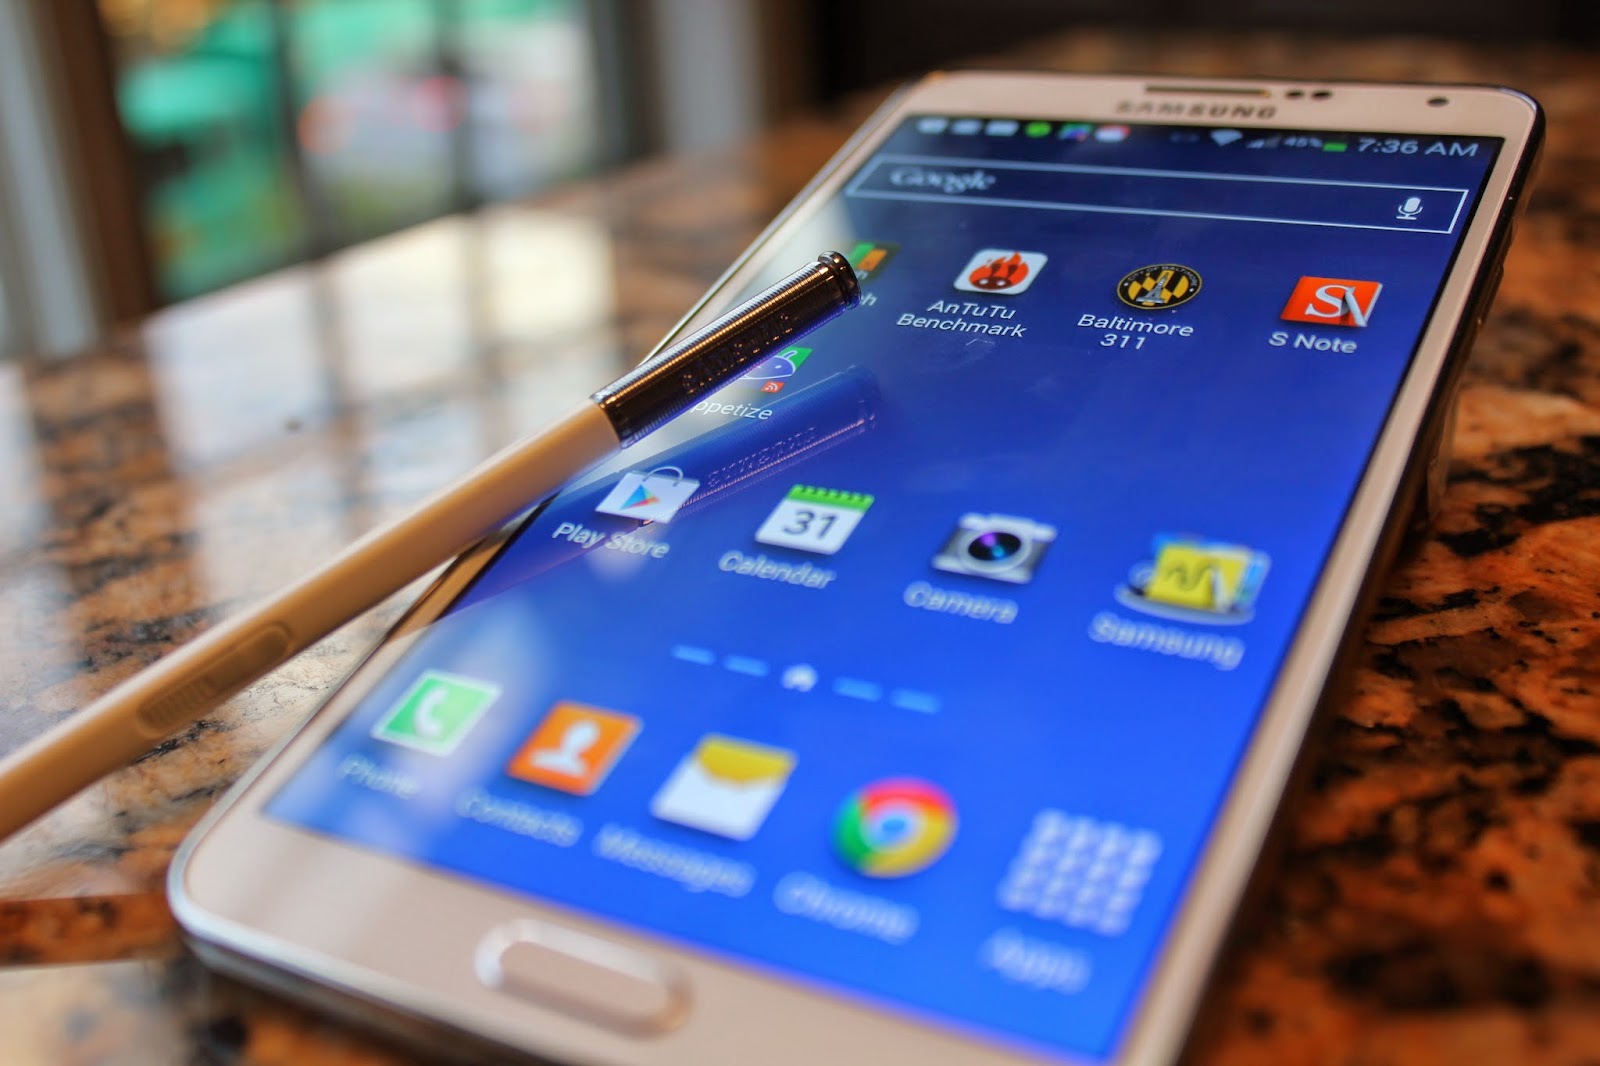 Localizzare Galaxy Note 3 in caso di furto, smarrimento o semplicemente per vedere la posizione